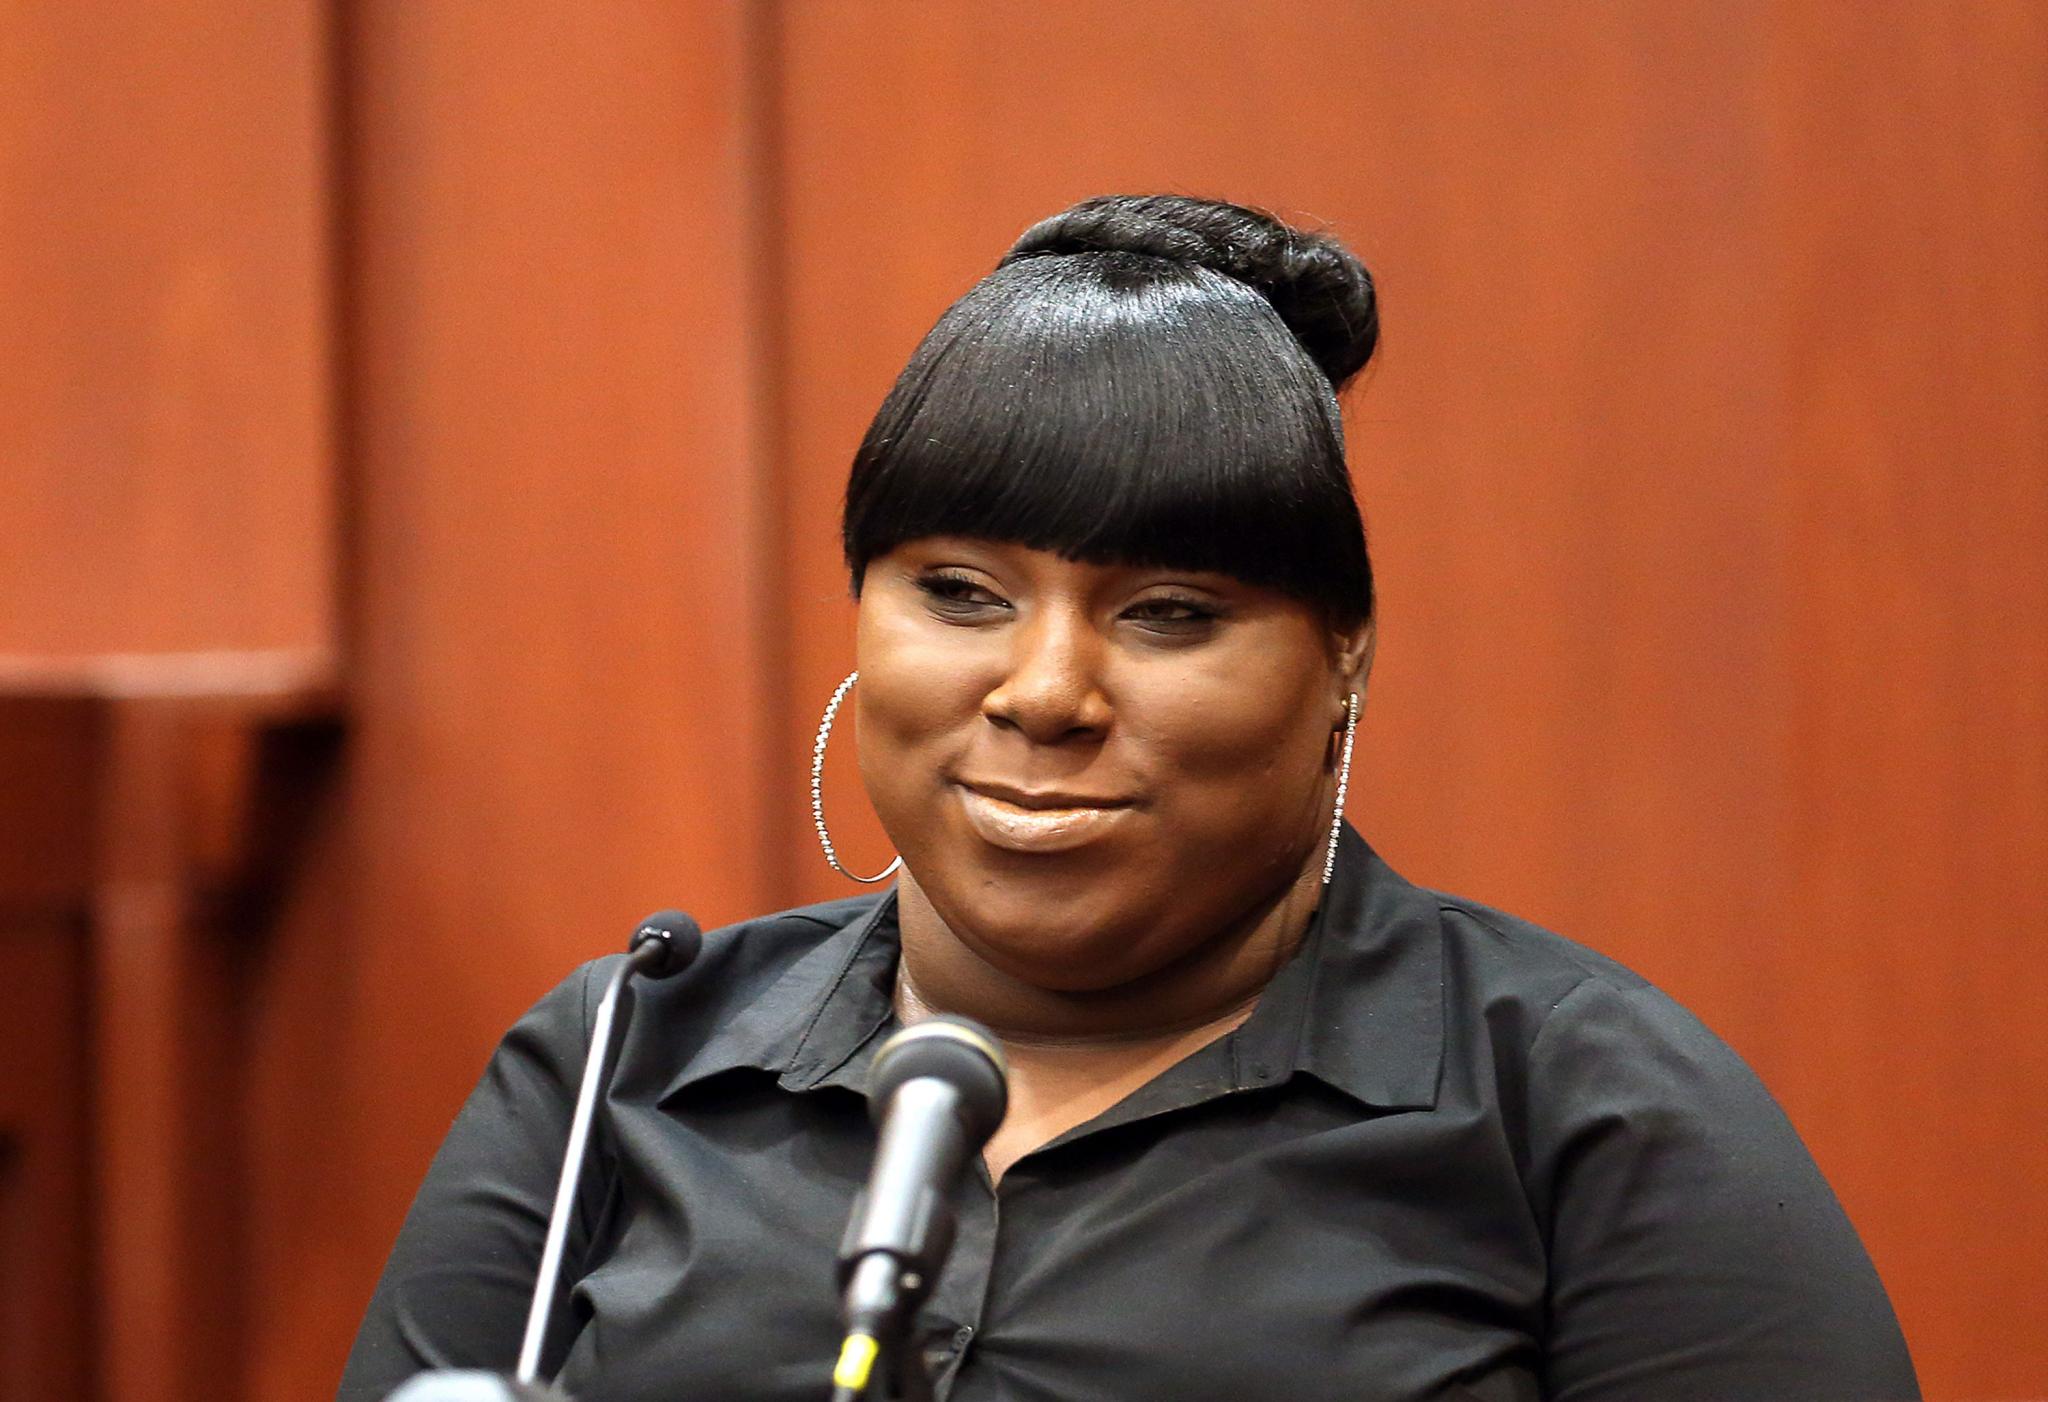 Rachel Jeantel, Key Witness in Trayvon Martin Case, Graduates From High School